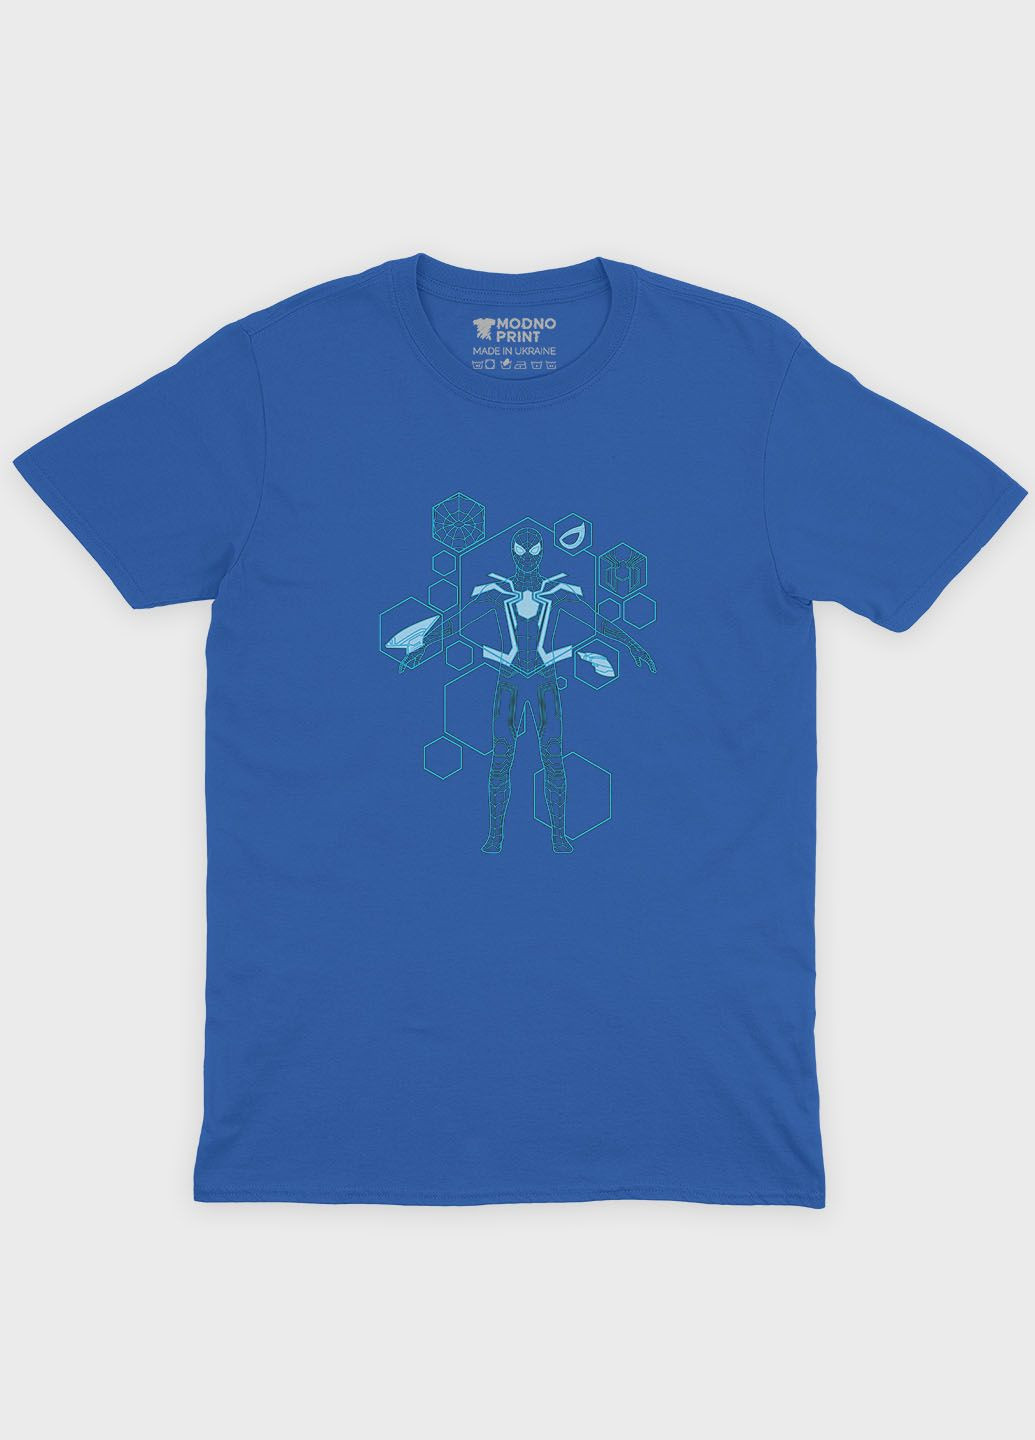 Синяя демисезонная футболка для мальчика с принтом супергероя - человек-паук (ts001-1-brr-006-014-094-b) Modno